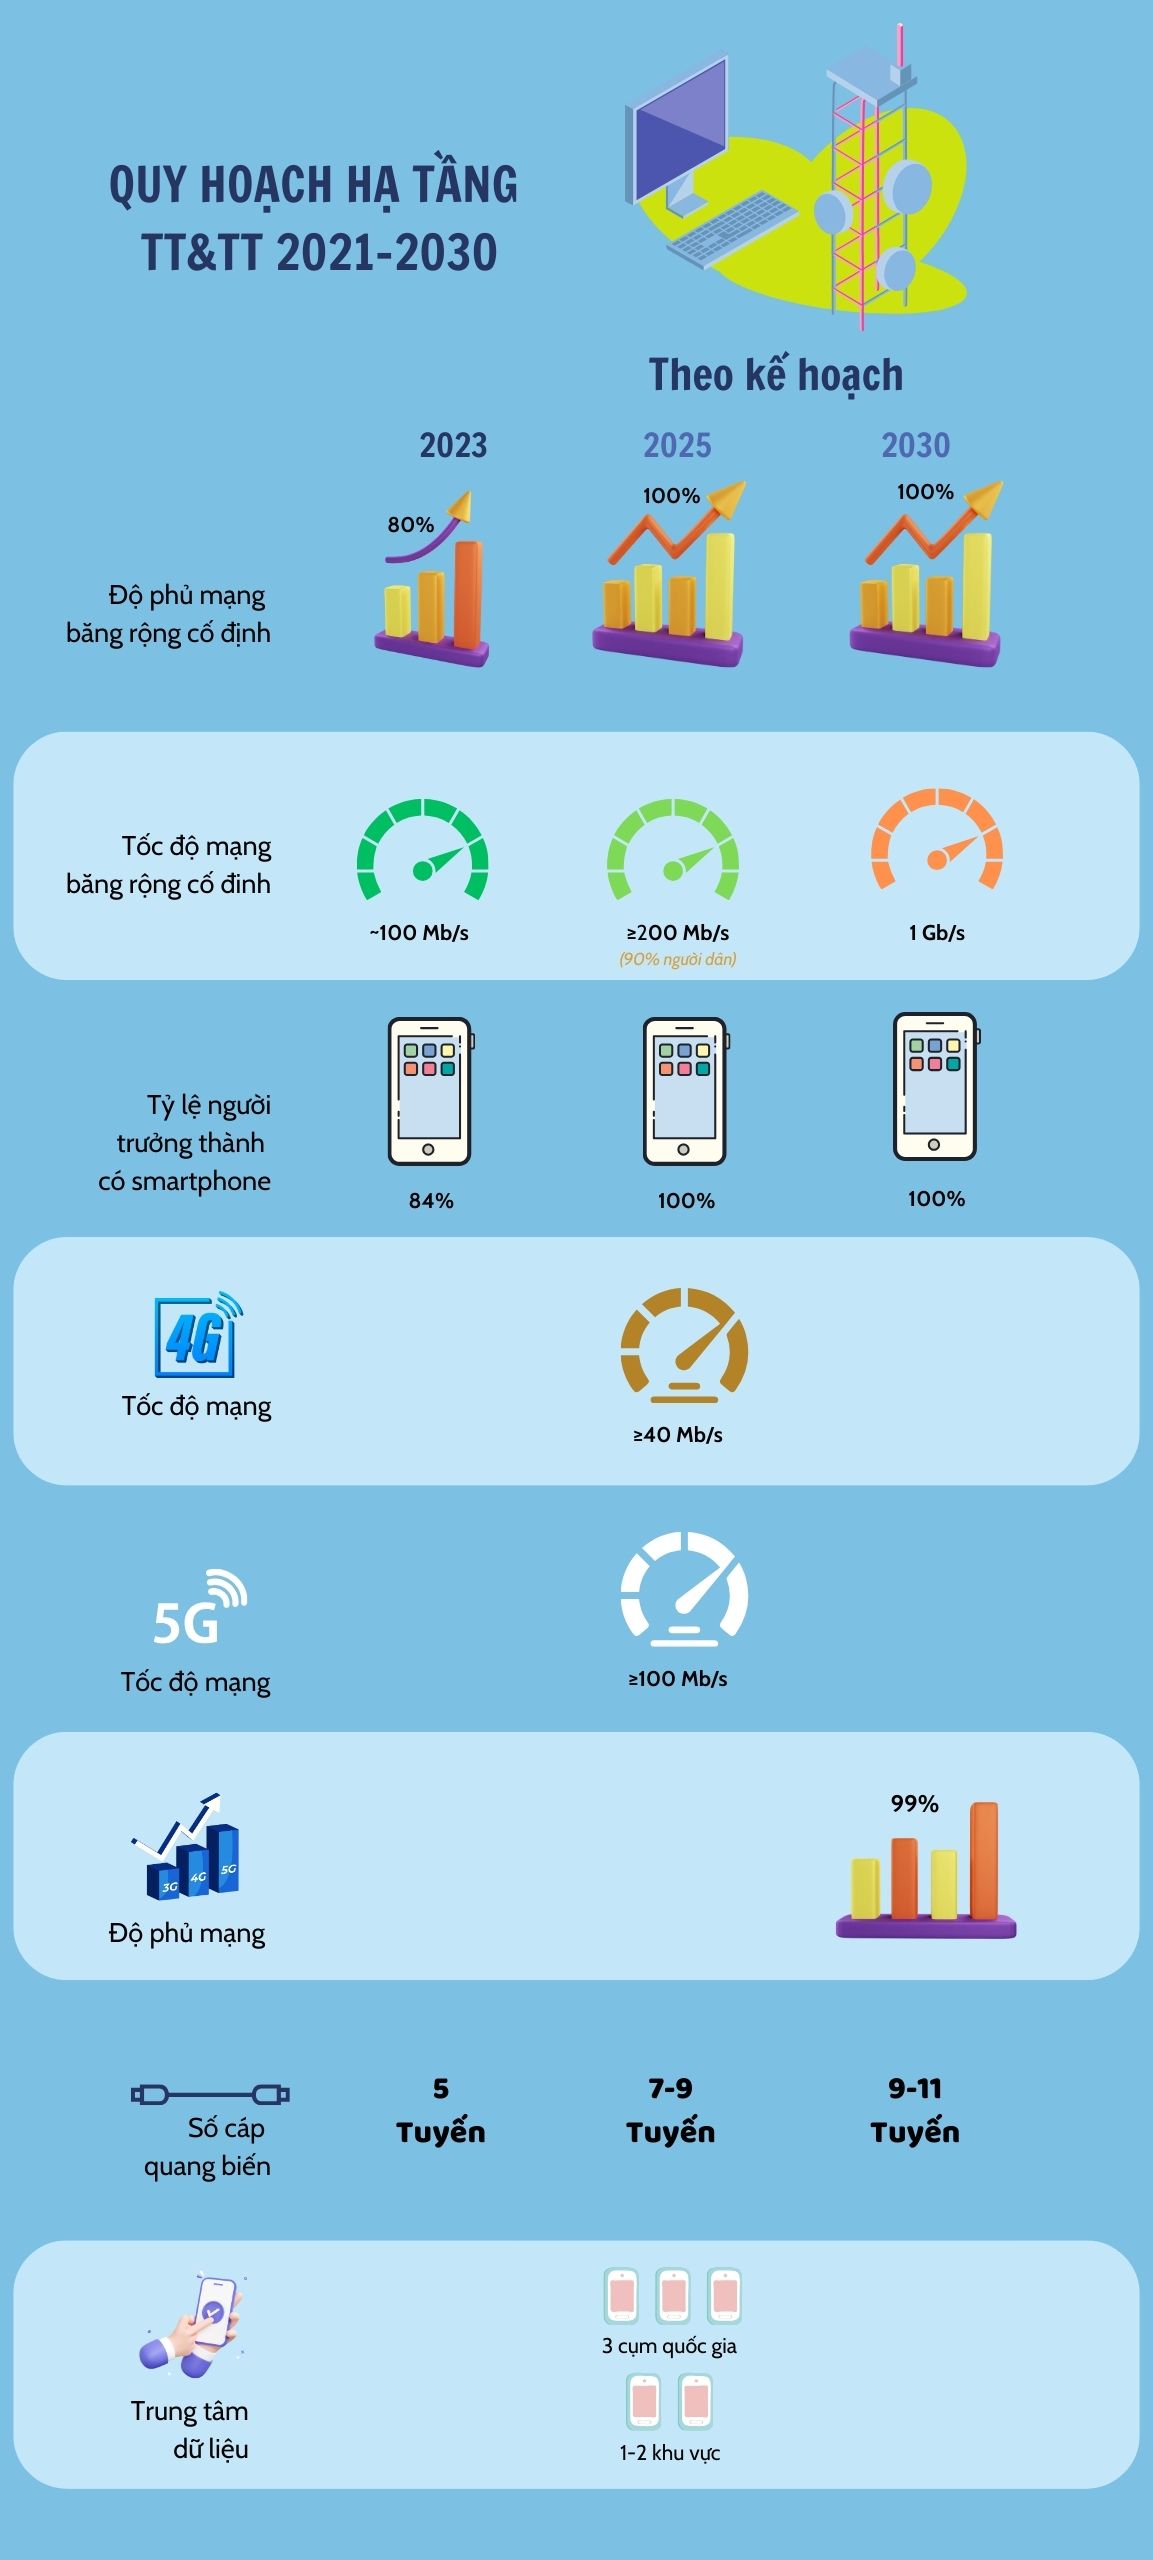 Hạ tầng viễn thông Việt Nam năm 2030: Tỷ lệ người dùng smartphone đạt 100%